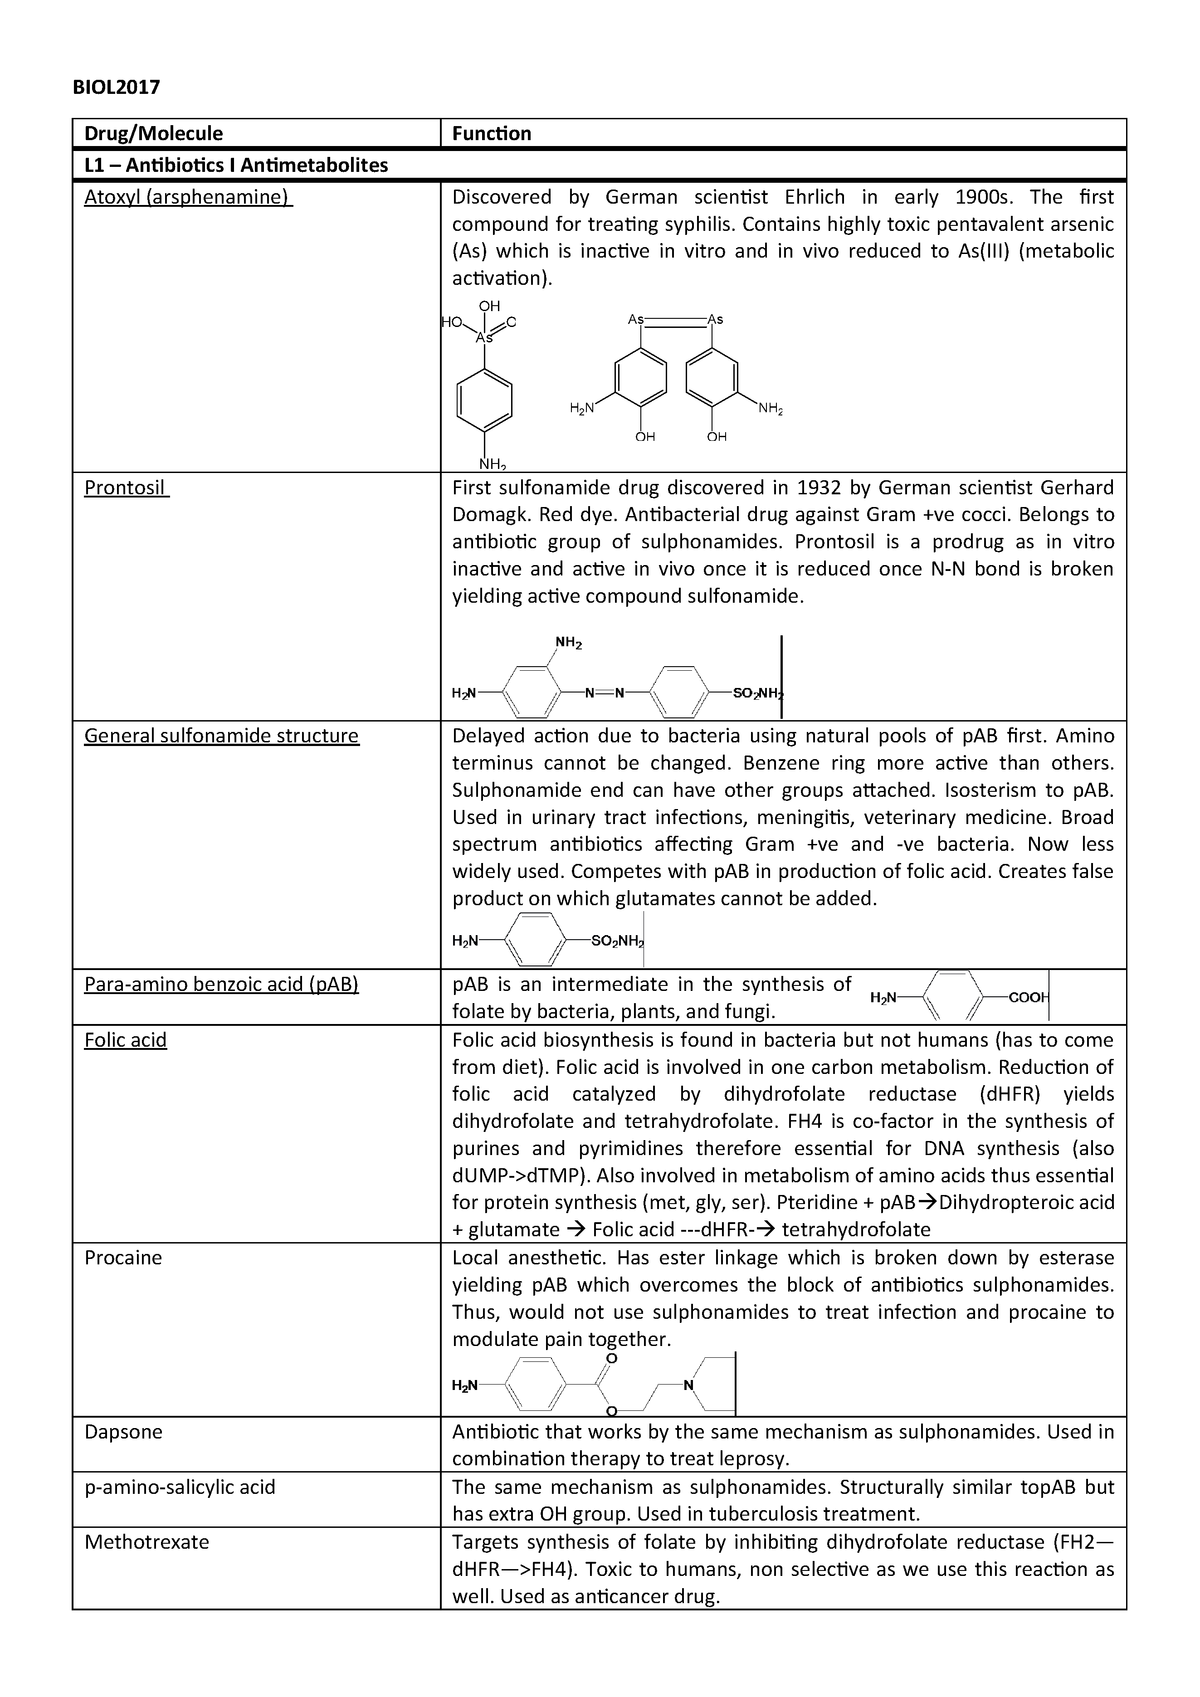 Pharmacokinetics of (a) MDMA, (b) MDA, and (c) reboxetine 